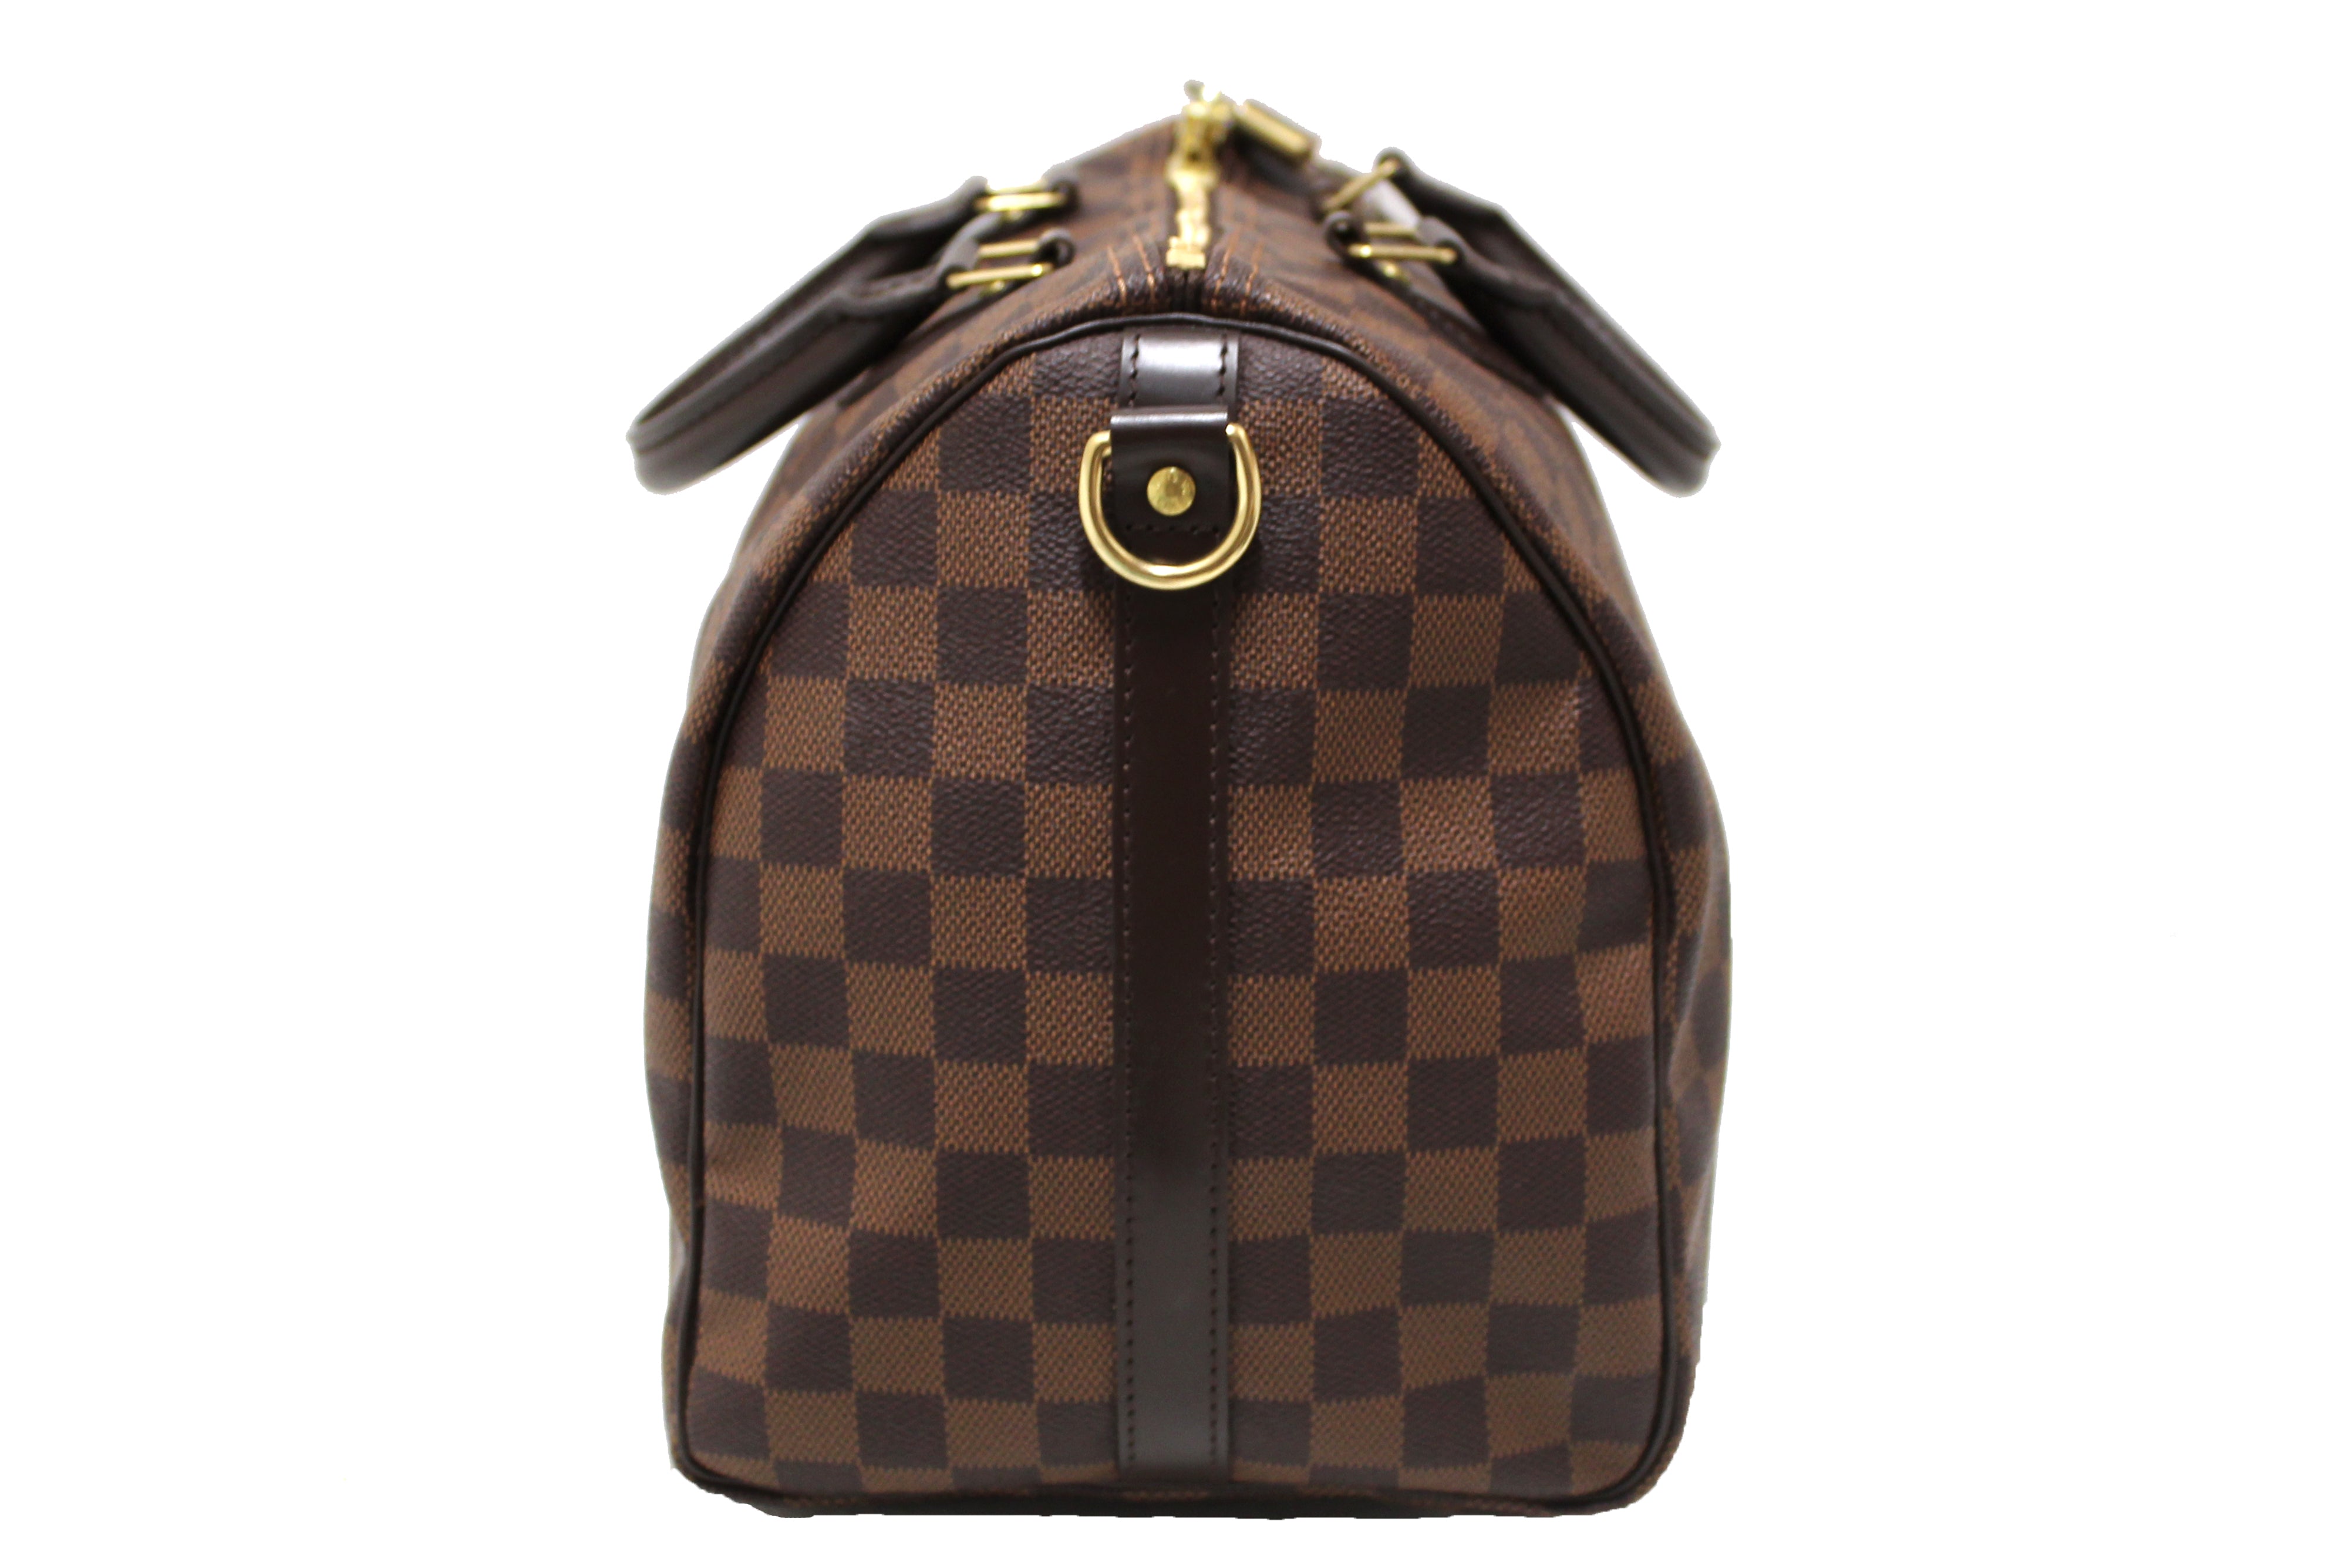 Authentic Louis Vuitton Damier Ebene Speedy 35 Bandouliere Bag